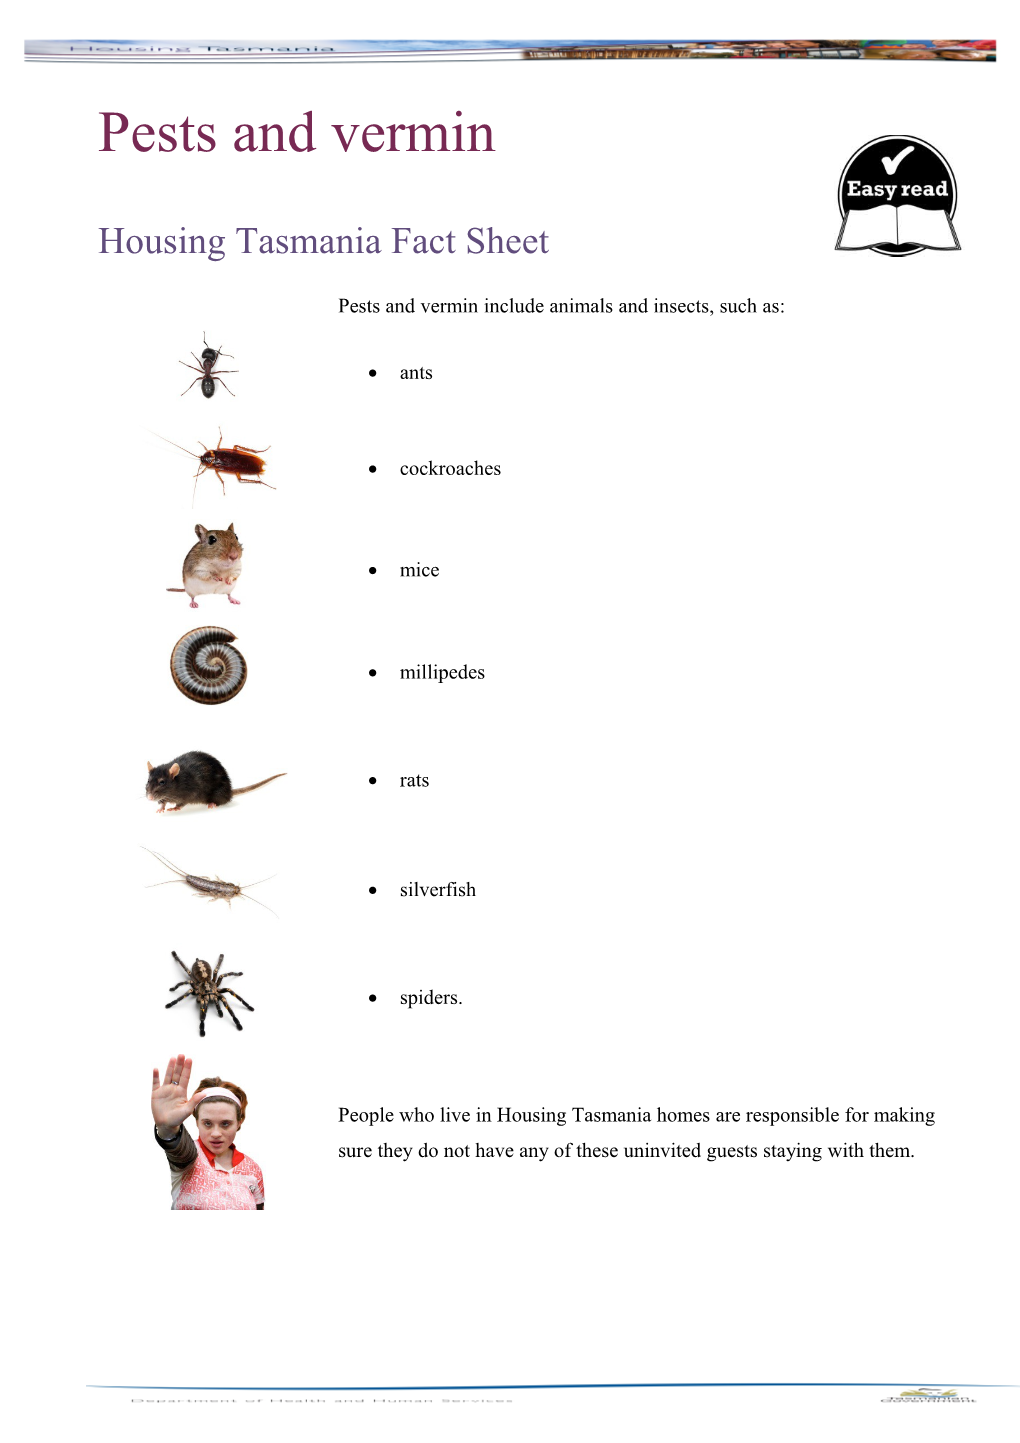 Housing Tasmania Fact Sheet